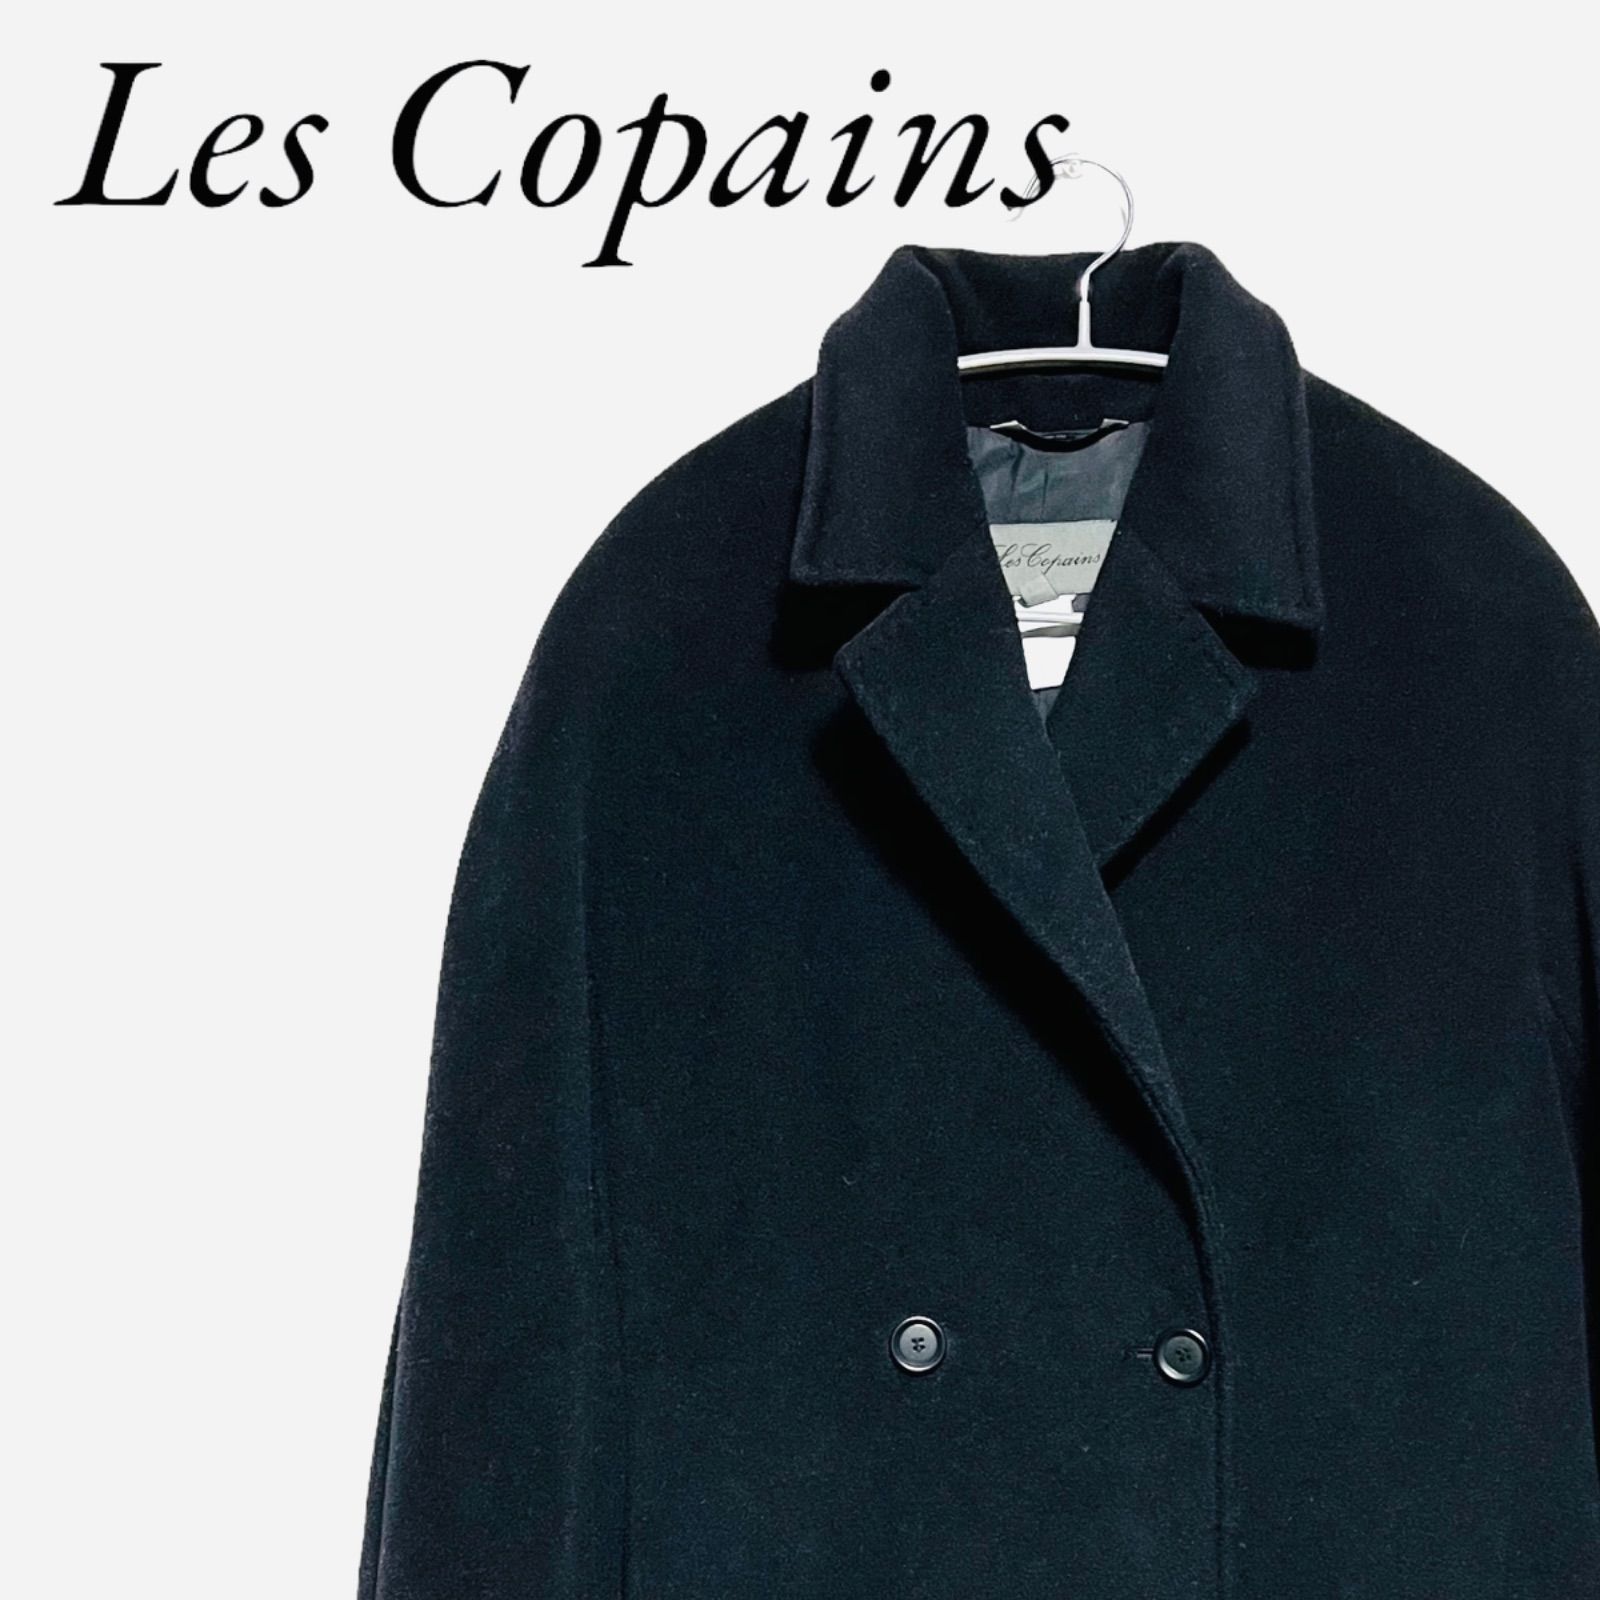 Les Copains レコパン ロングコート イタリア製 無地 ブラック サイズ42 Lサイズ ウール 228 006752 236